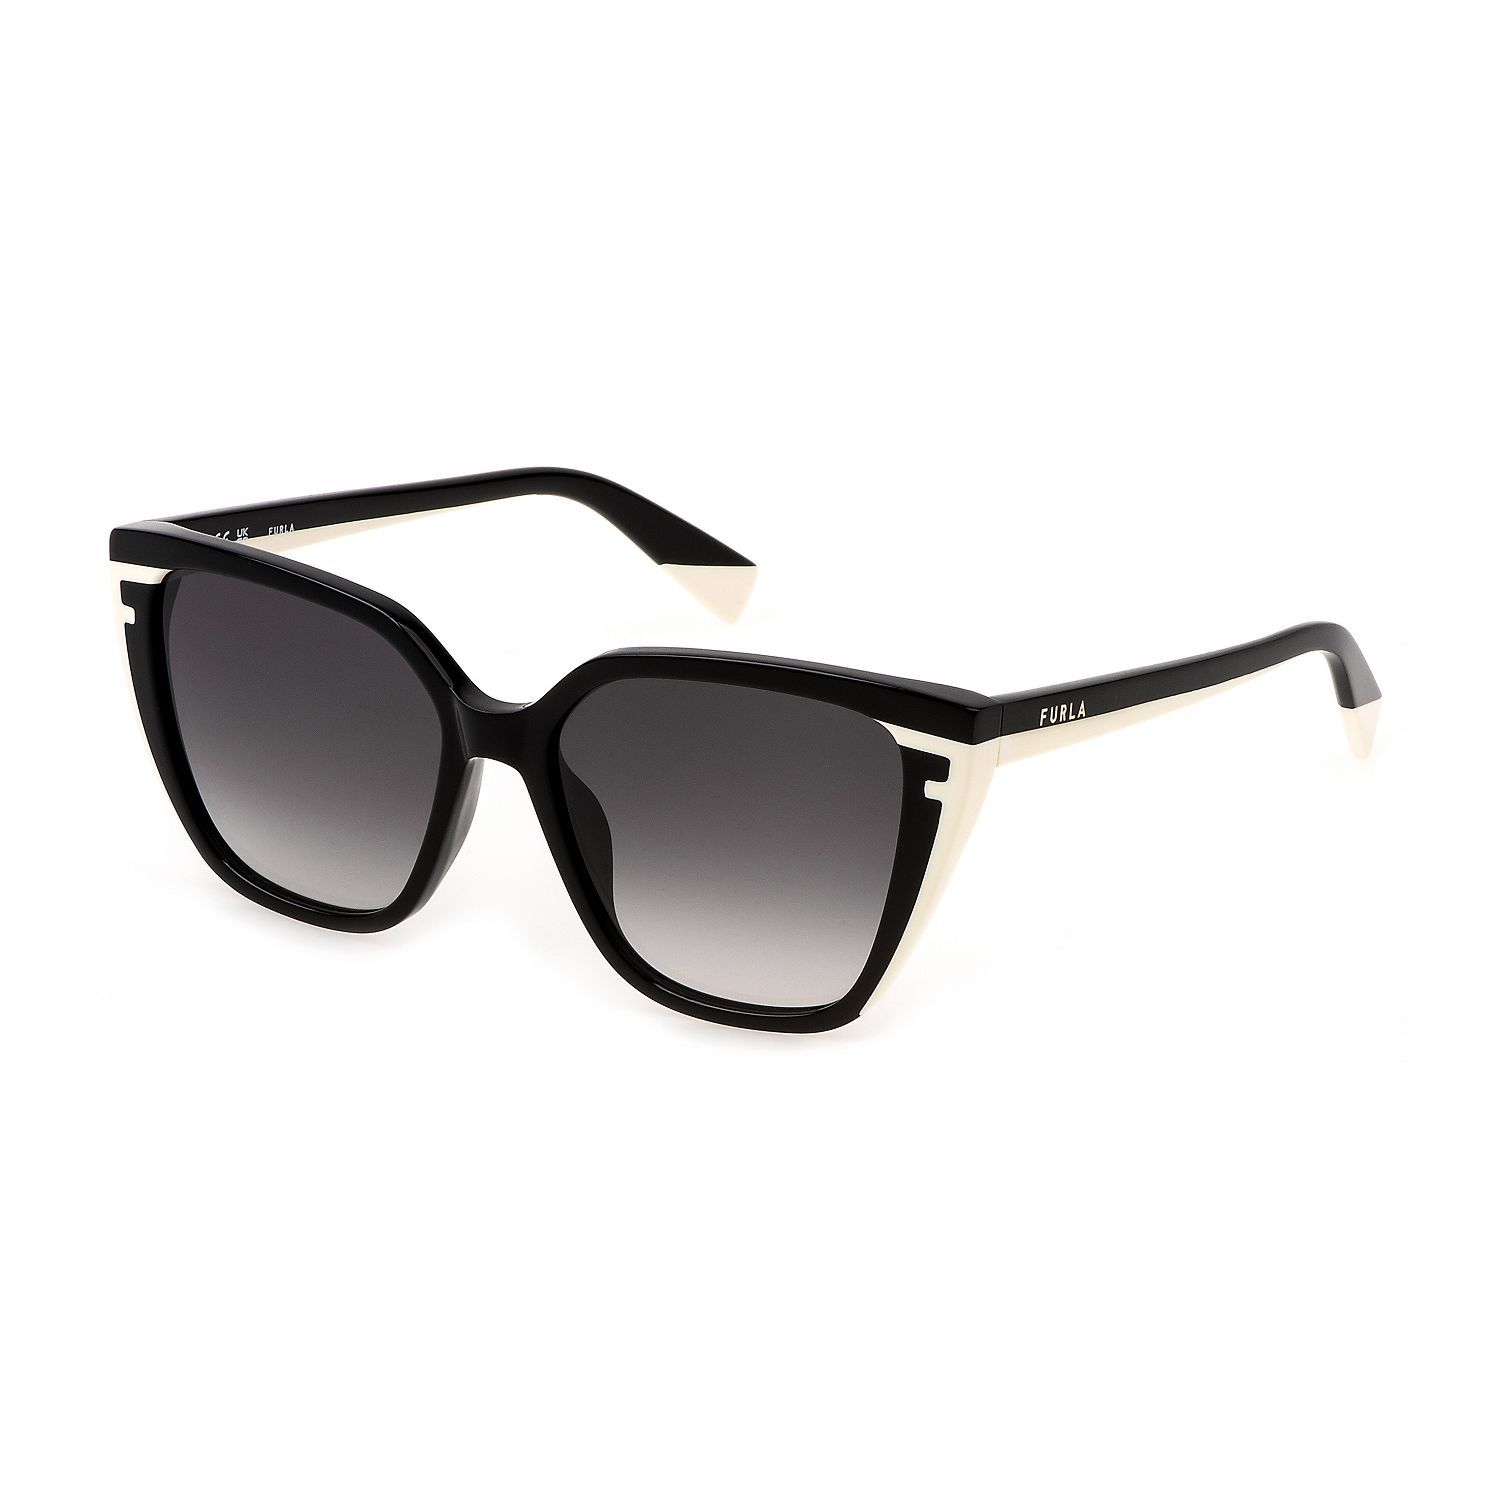 SFU782 Square Sunglasses 0700 - size 55